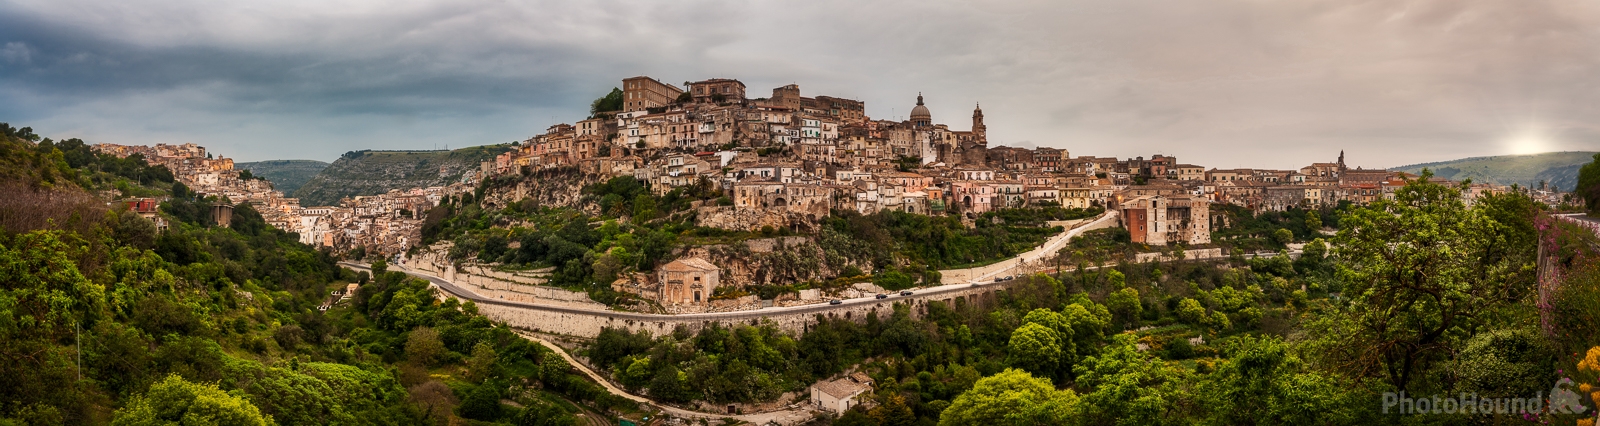 Image of Ragusa Ibla - Panoramic View by Raimondo Giamberduca